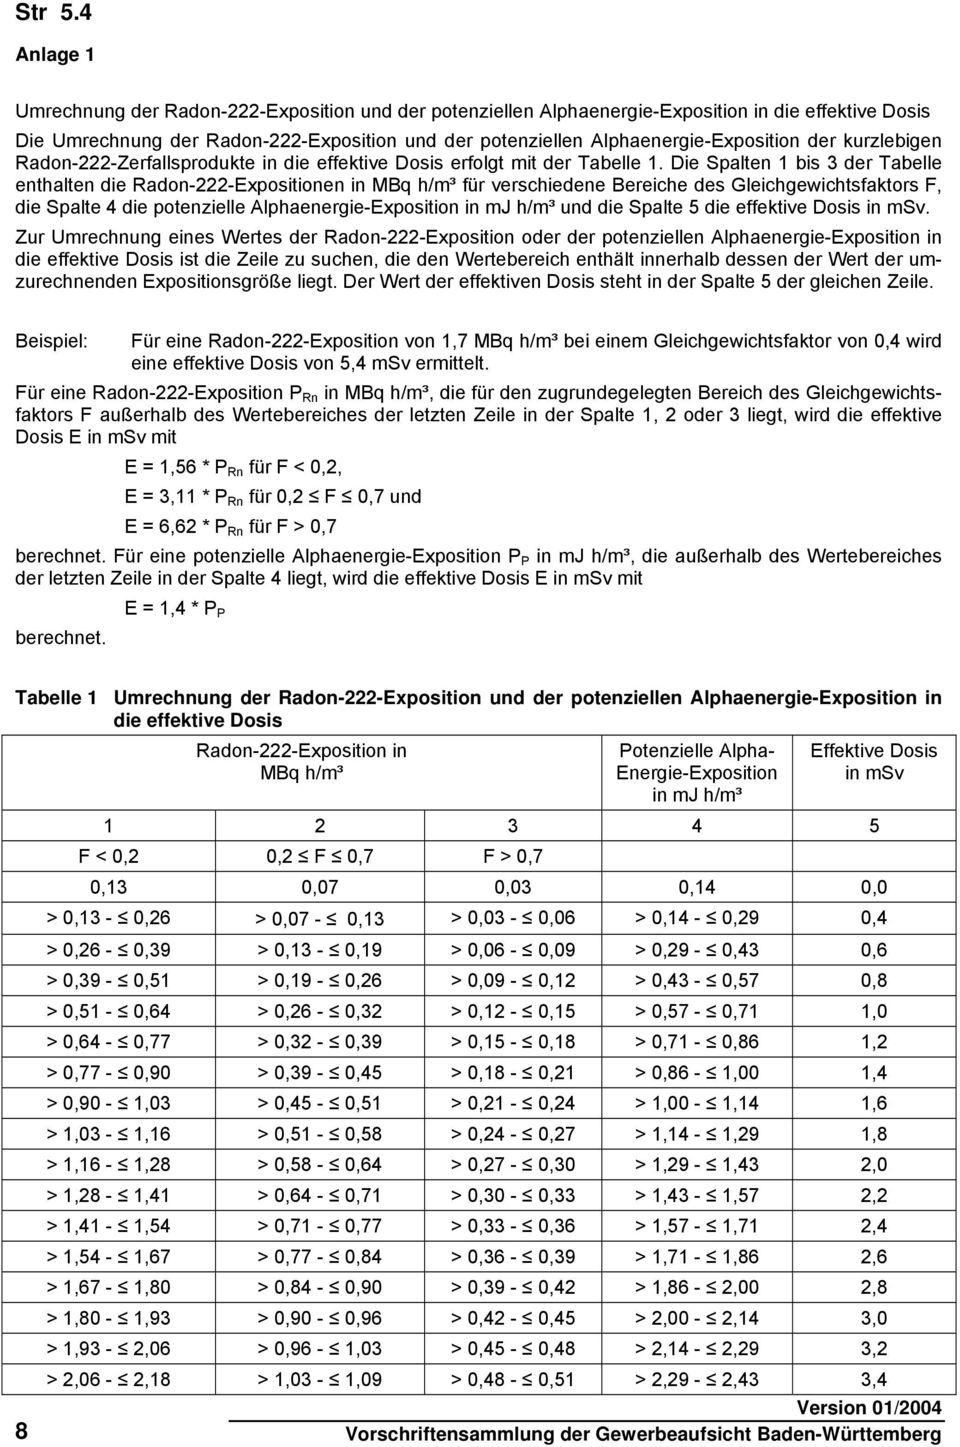 Die Spalten 1 bis 3 der Tabelle enthalten die Radon-222-Expositionen in MBq h/m³ für verschiedene Bereiche des Gleichgewichtsfaktors F, die Spalte 4 die potenzielle Alphaenergie-Exposition in mj h/m³